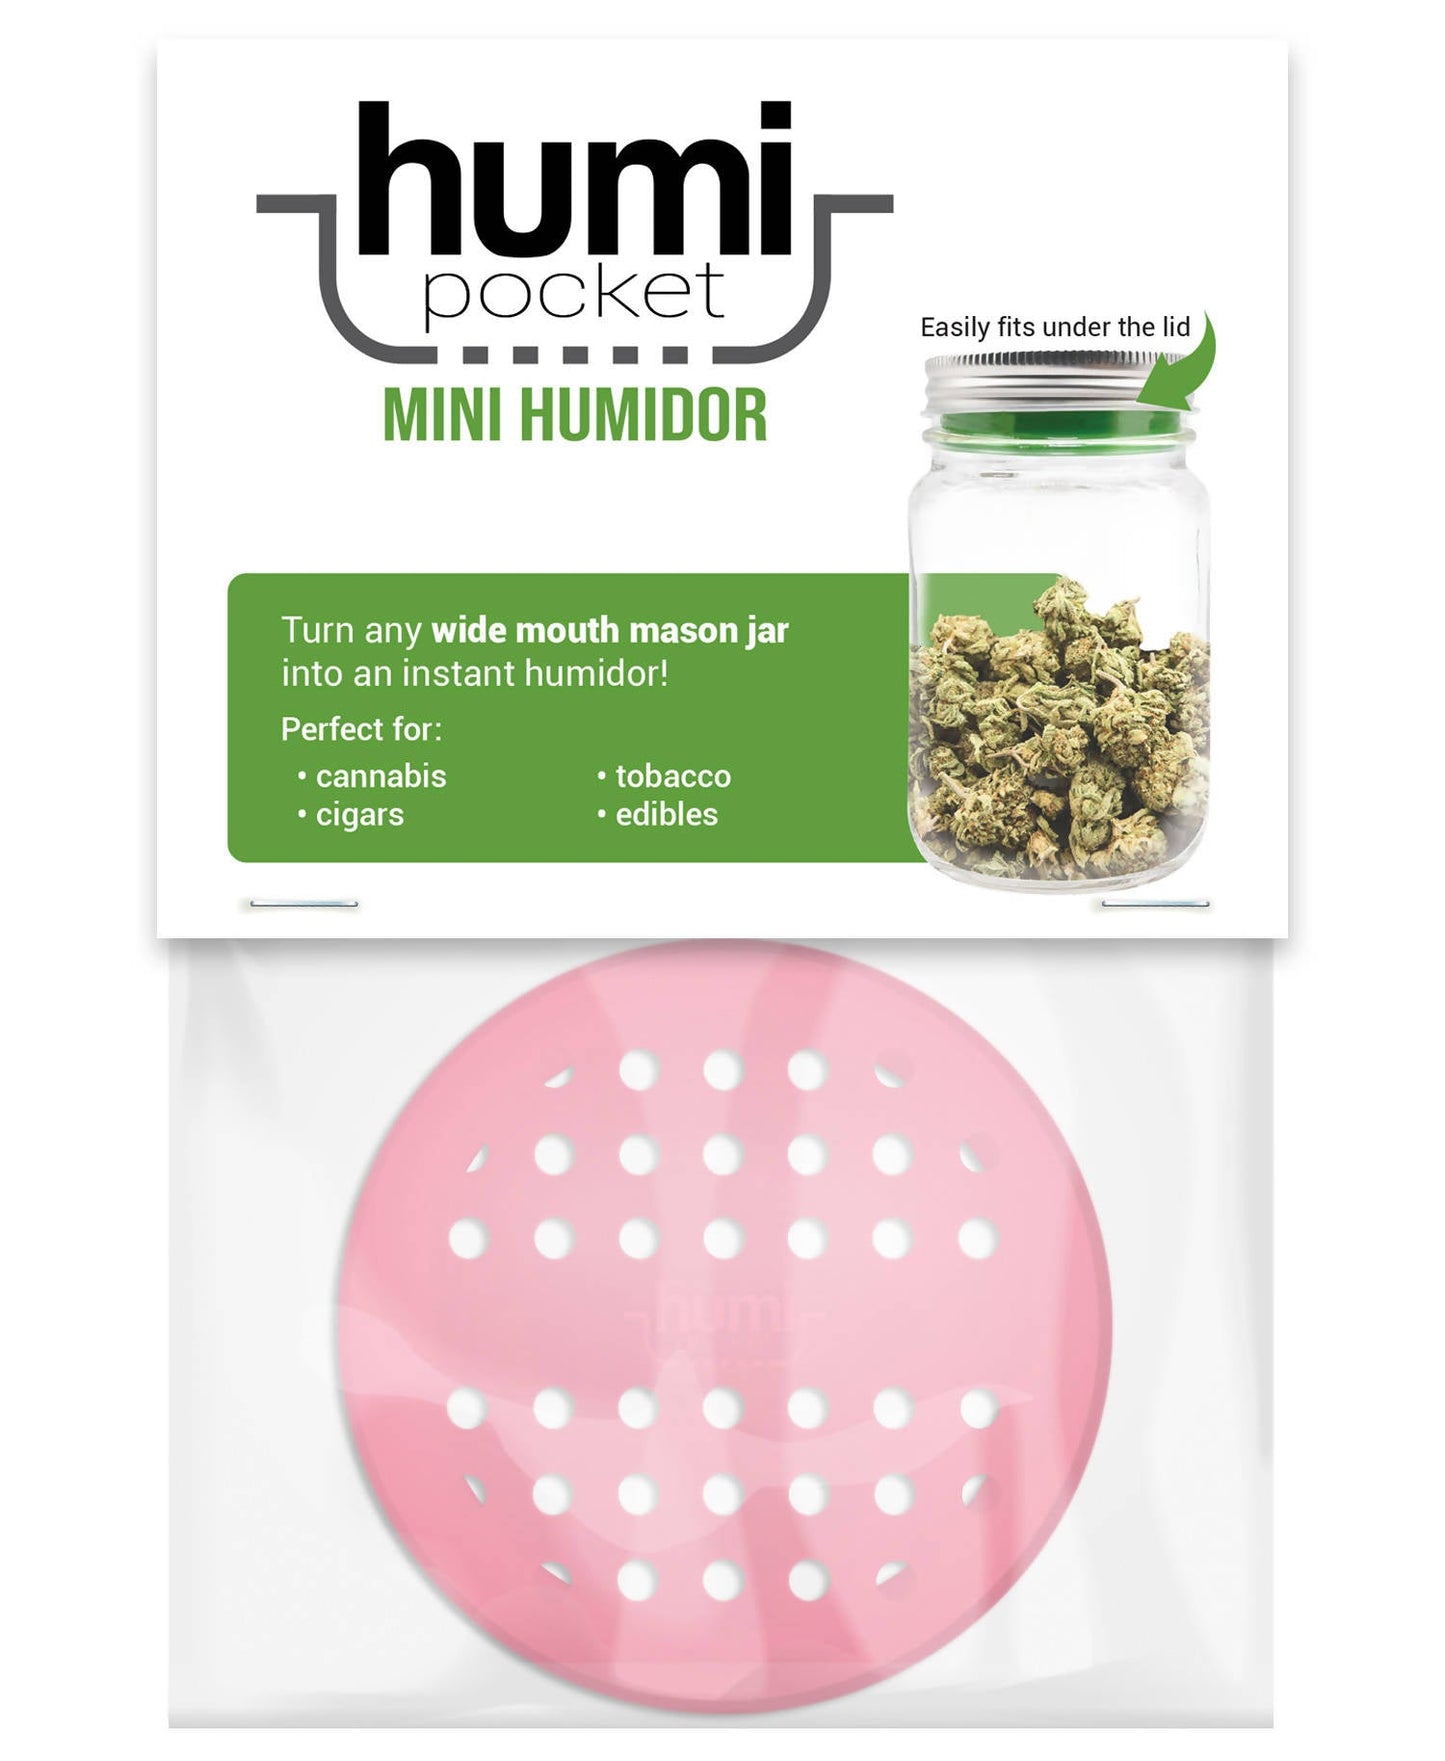 Humi Pocket Mini Humidor_7